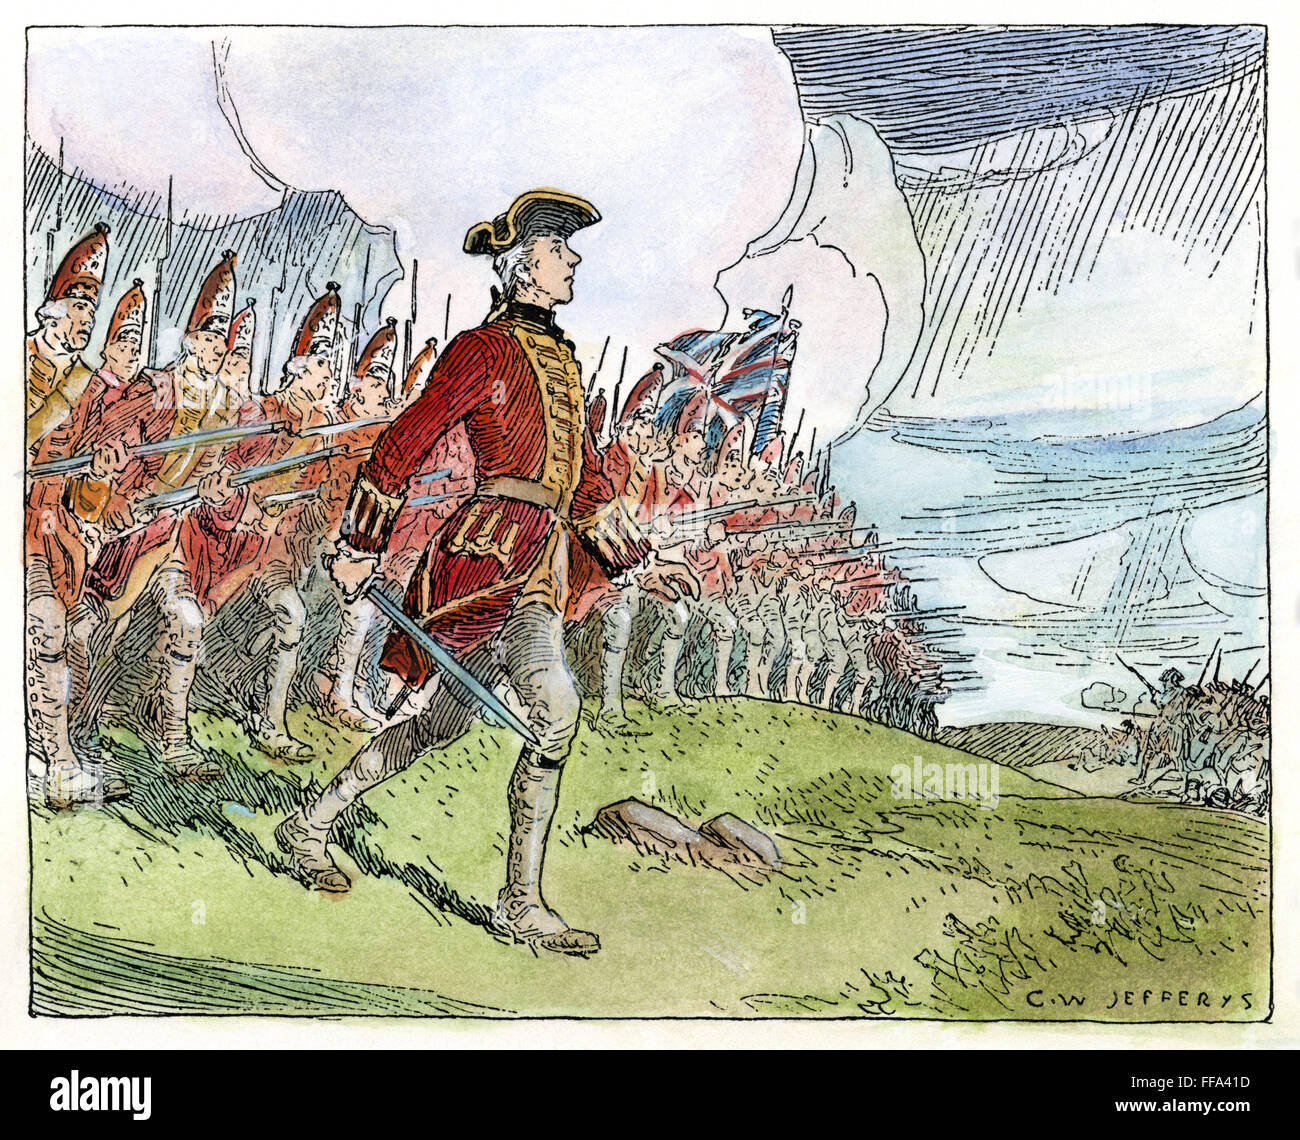 WOLFE IN QUÉBEC, 1759. /nGeneral James Wolfe führt die Briten "thin red Line" in die Schlacht gegen die Franzosen auf der Plains Of Abraham außerhalb Québec (Stadt), 13. September 1759. Zeichnung von c.w. Jefferys. Stockfoto